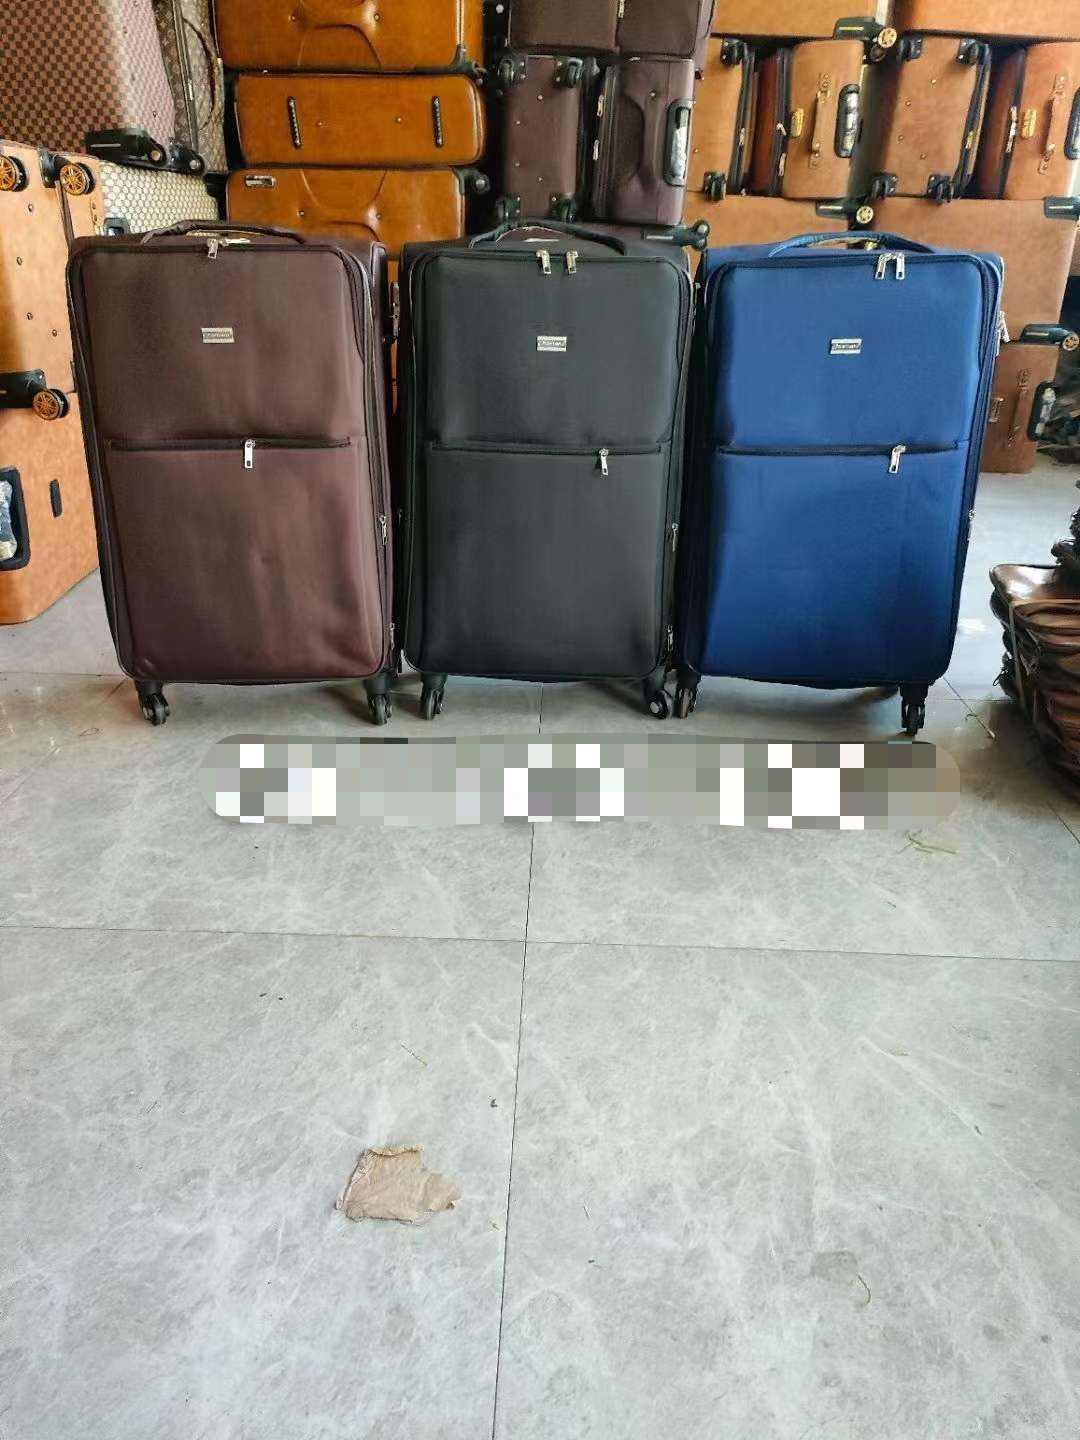 儿童拉杆箱行李箱登机箱 皮具箱包 手机臂包 轻便耐用 旅行必备 小朋友专属行李箱拉杆箱细节图